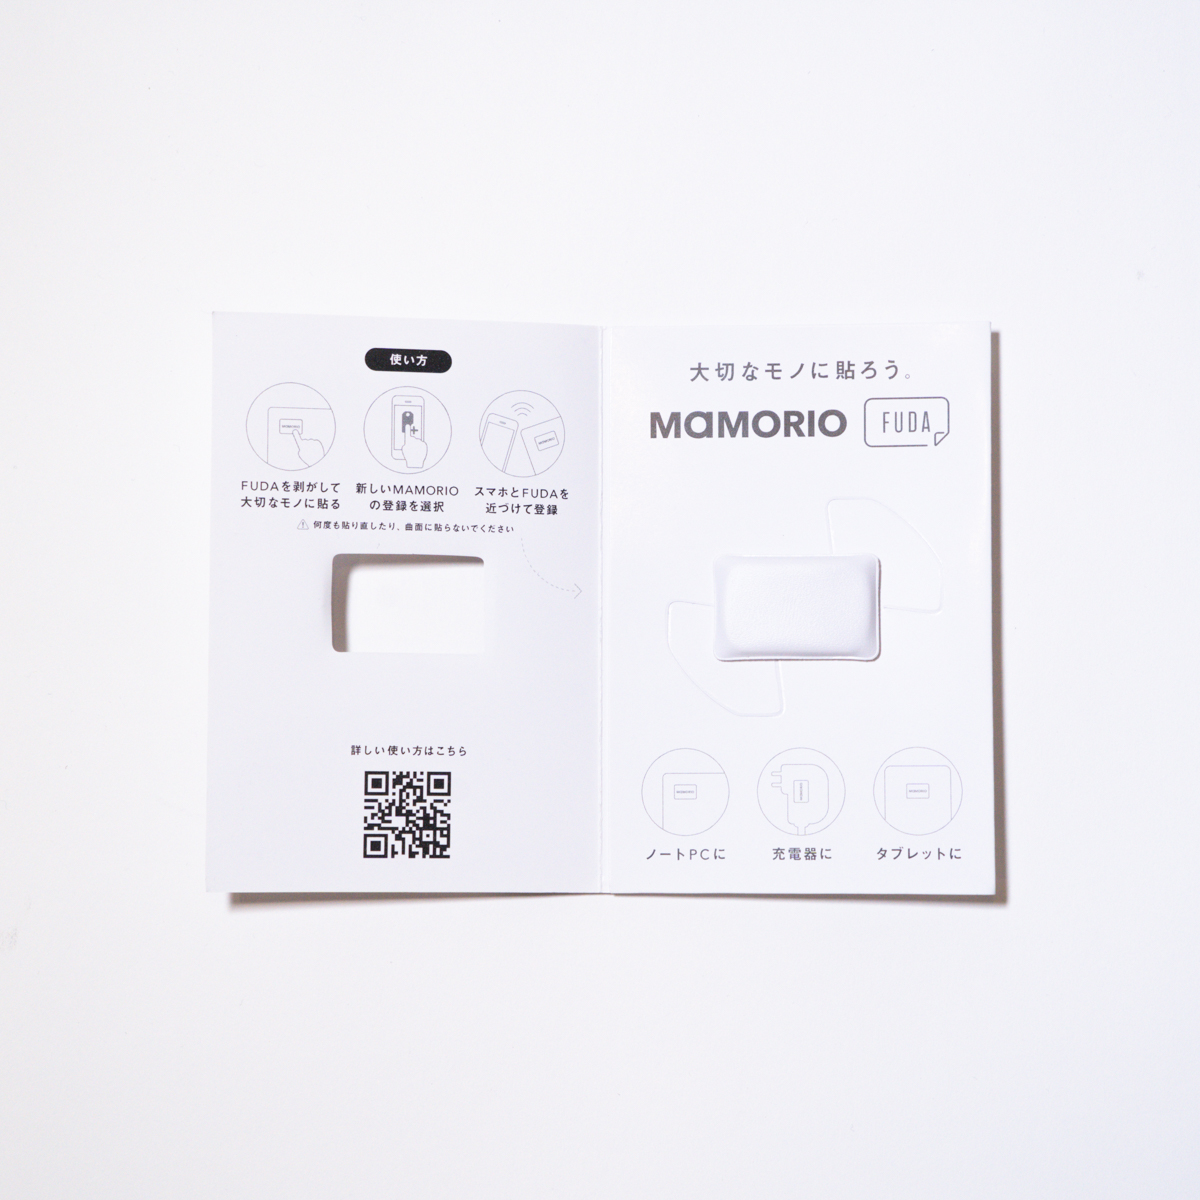 楽天市場 Mamorio Fuda 第二世代 無地 マモリオ フューダ シール型 紛失防止 落し物防止 忘れ物防止 グッズ Bluetooth スマホ連携 アプリ無料 送料無料 Mamorio公式ストア 楽天市場店